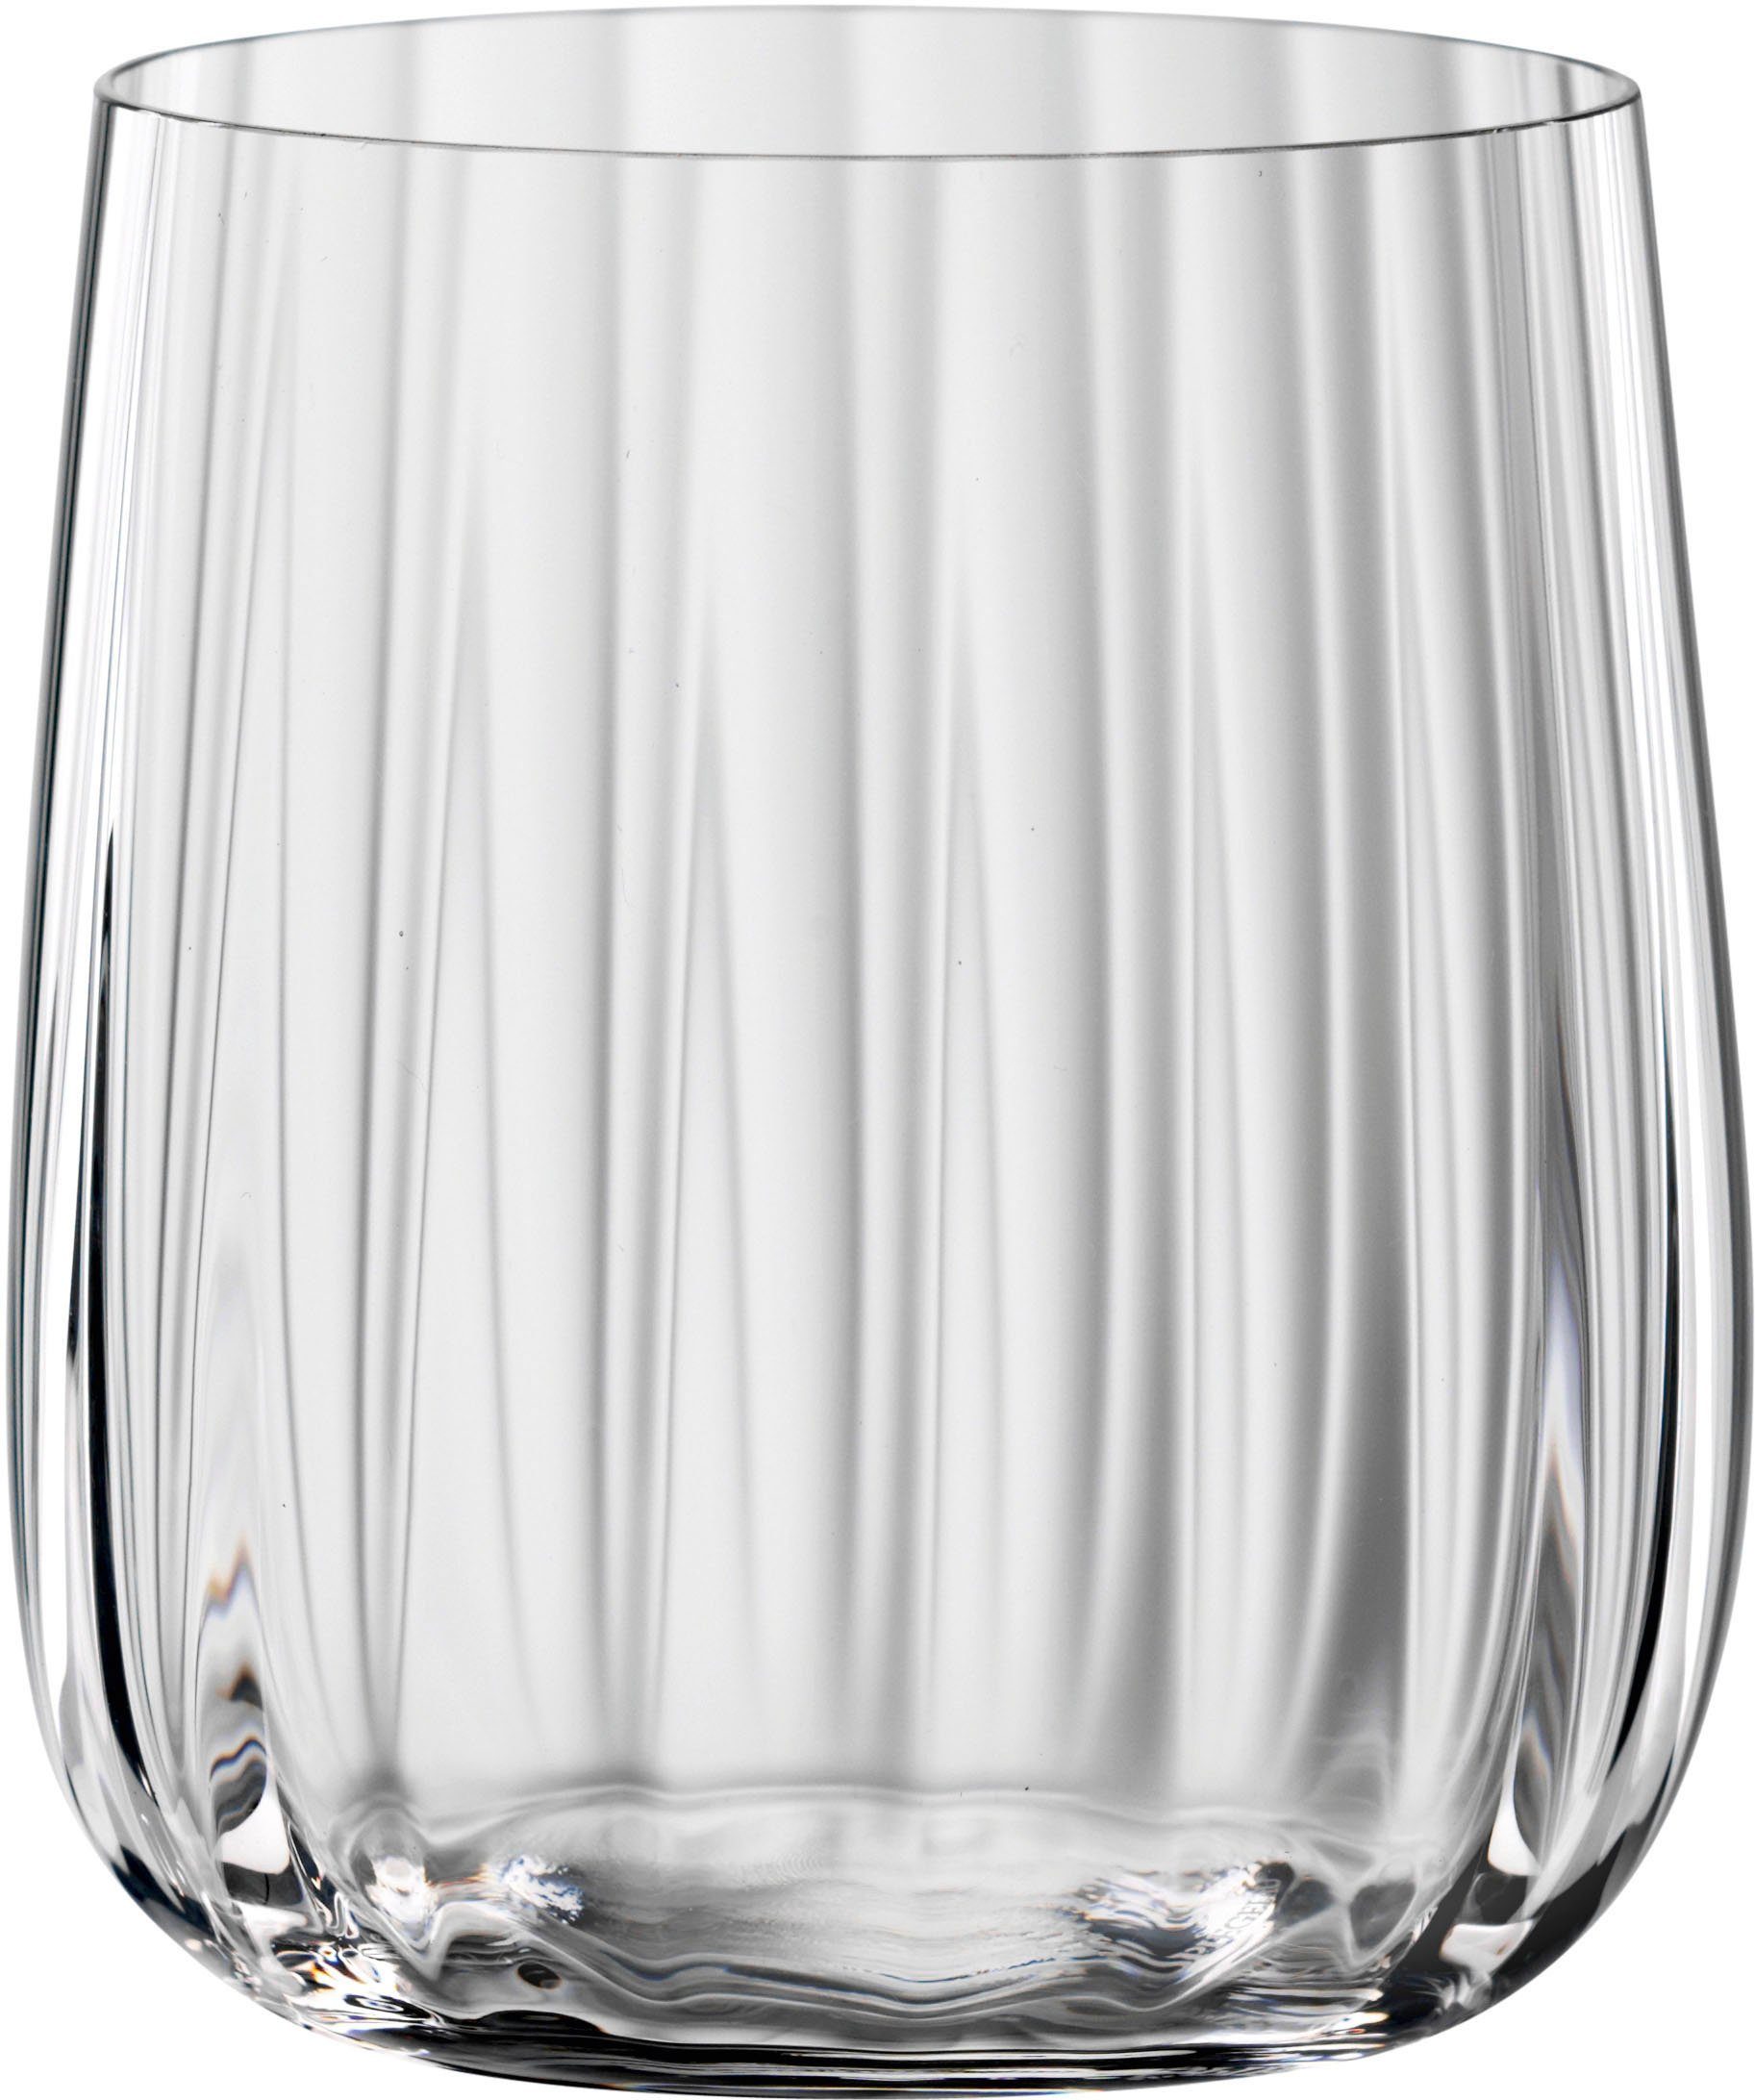 Becher 4-teilig LifeStyle, 340 ml, Kristallglas, SPIEGELAU